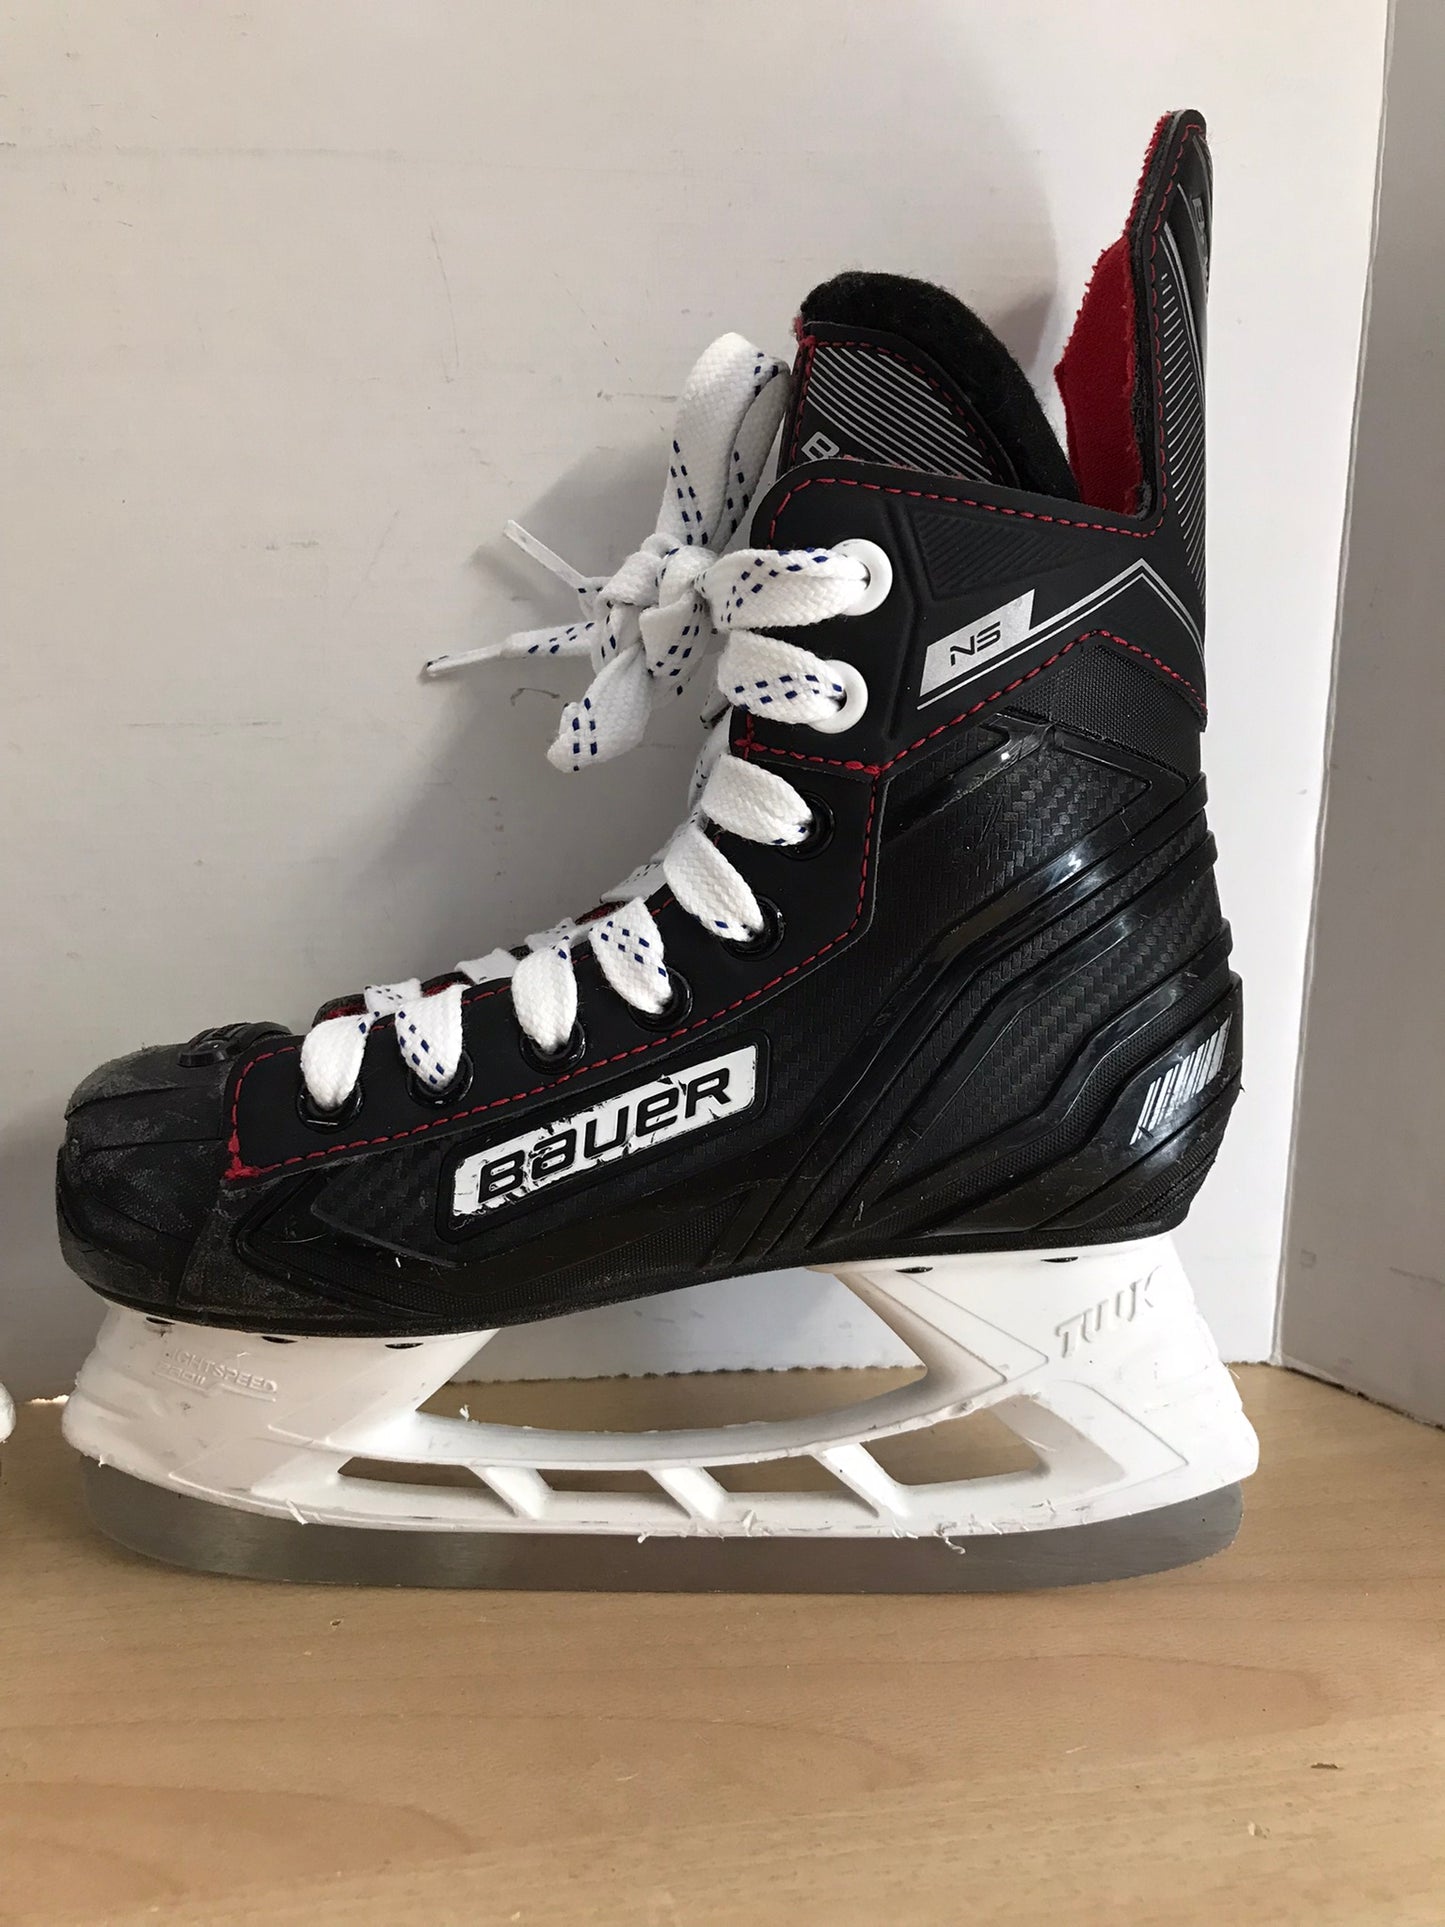 Hockey Skates Child Size 1 Shoe Size Bauer NS